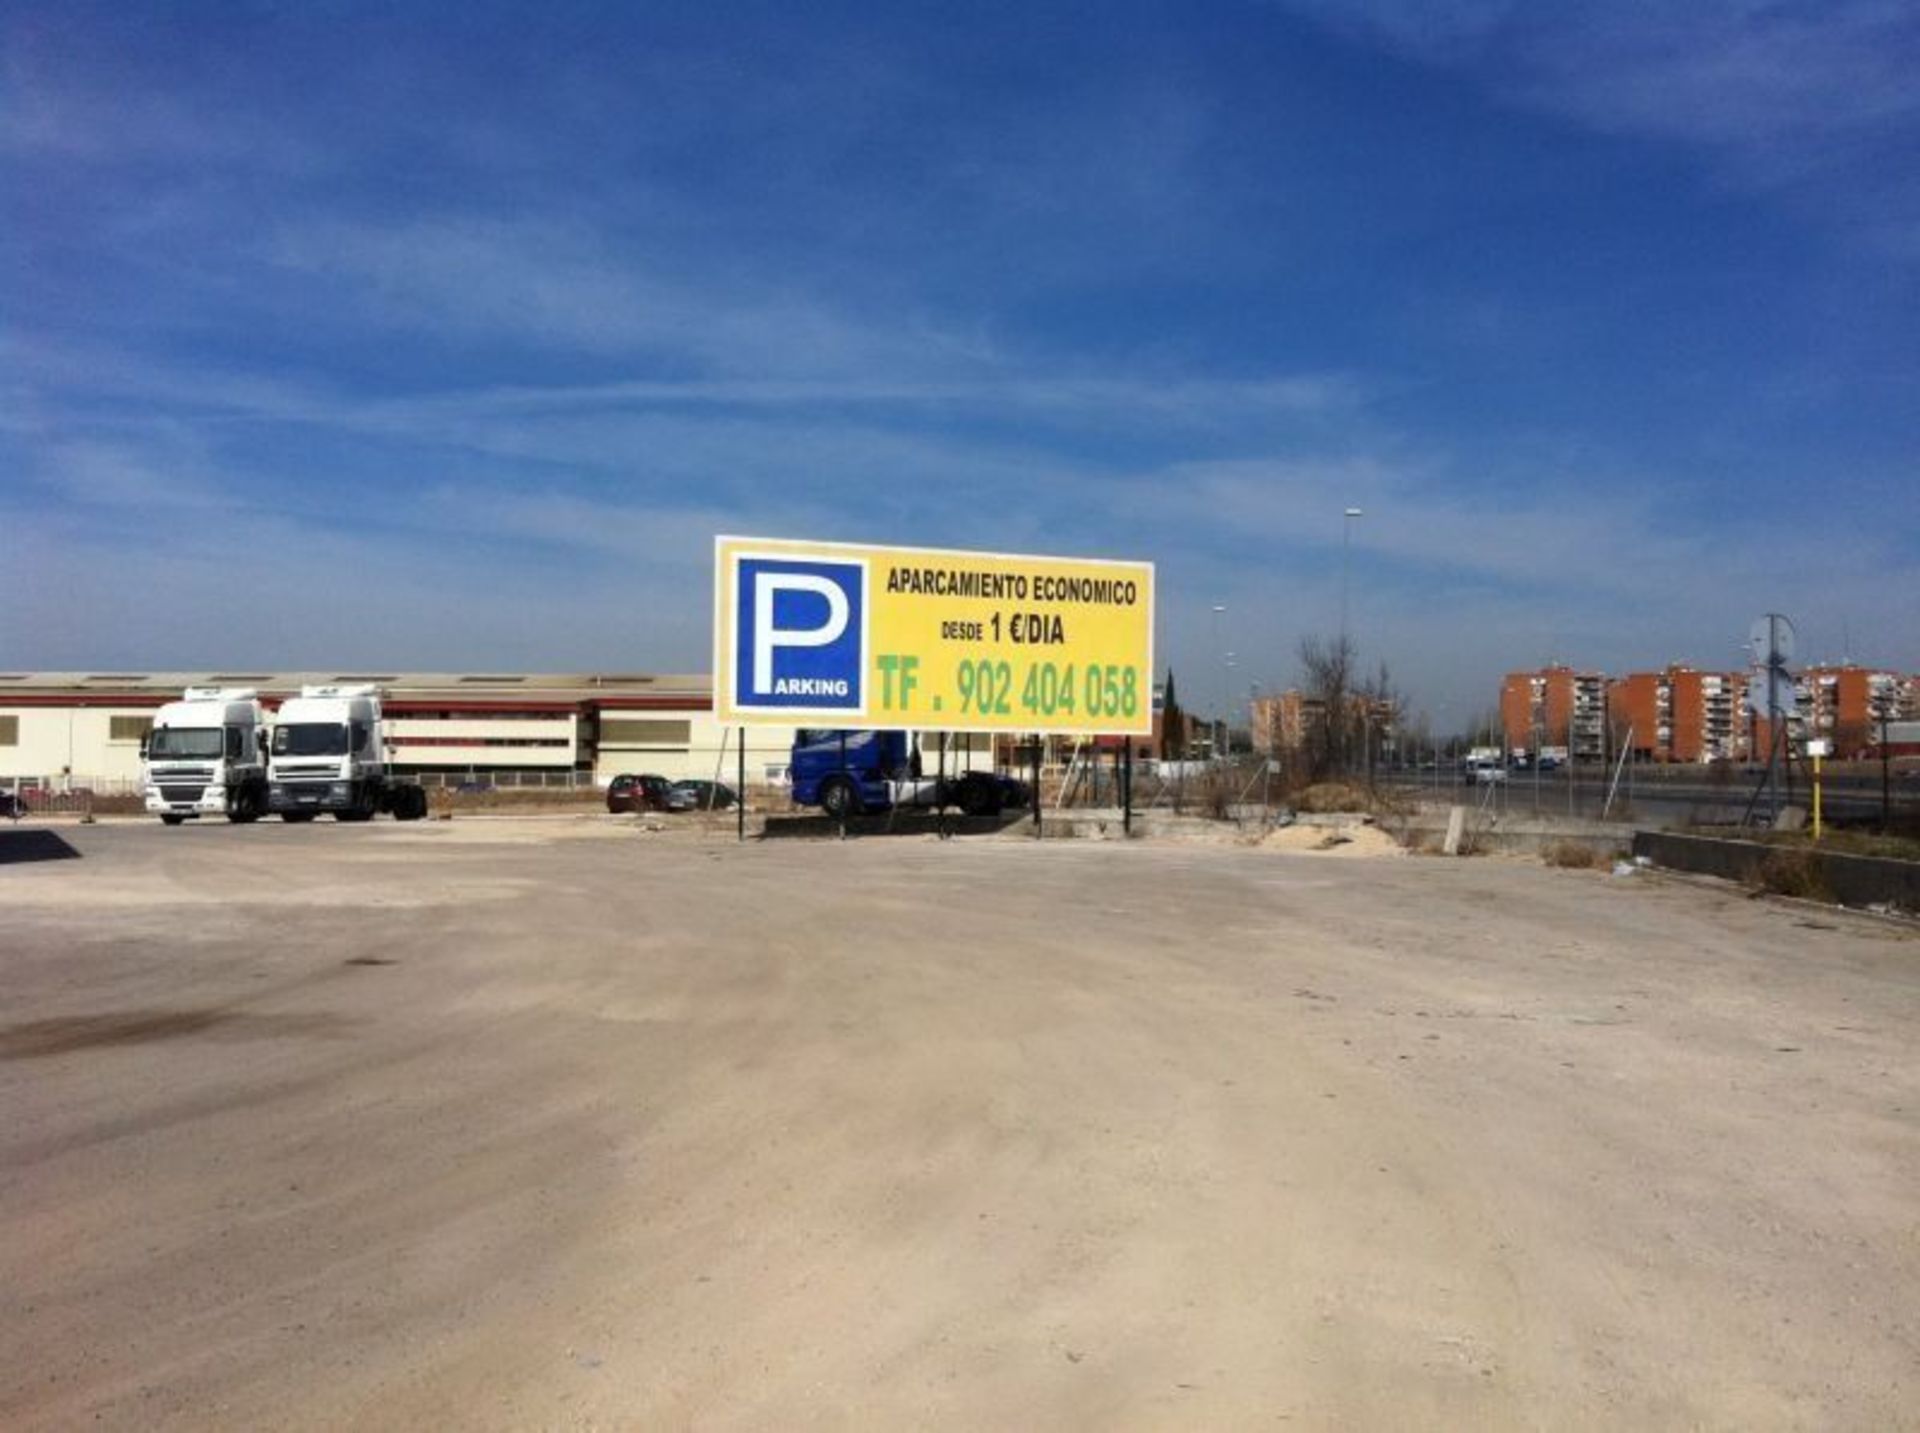 Proyecto de apertura de parking descubierto en Fuenlabrada